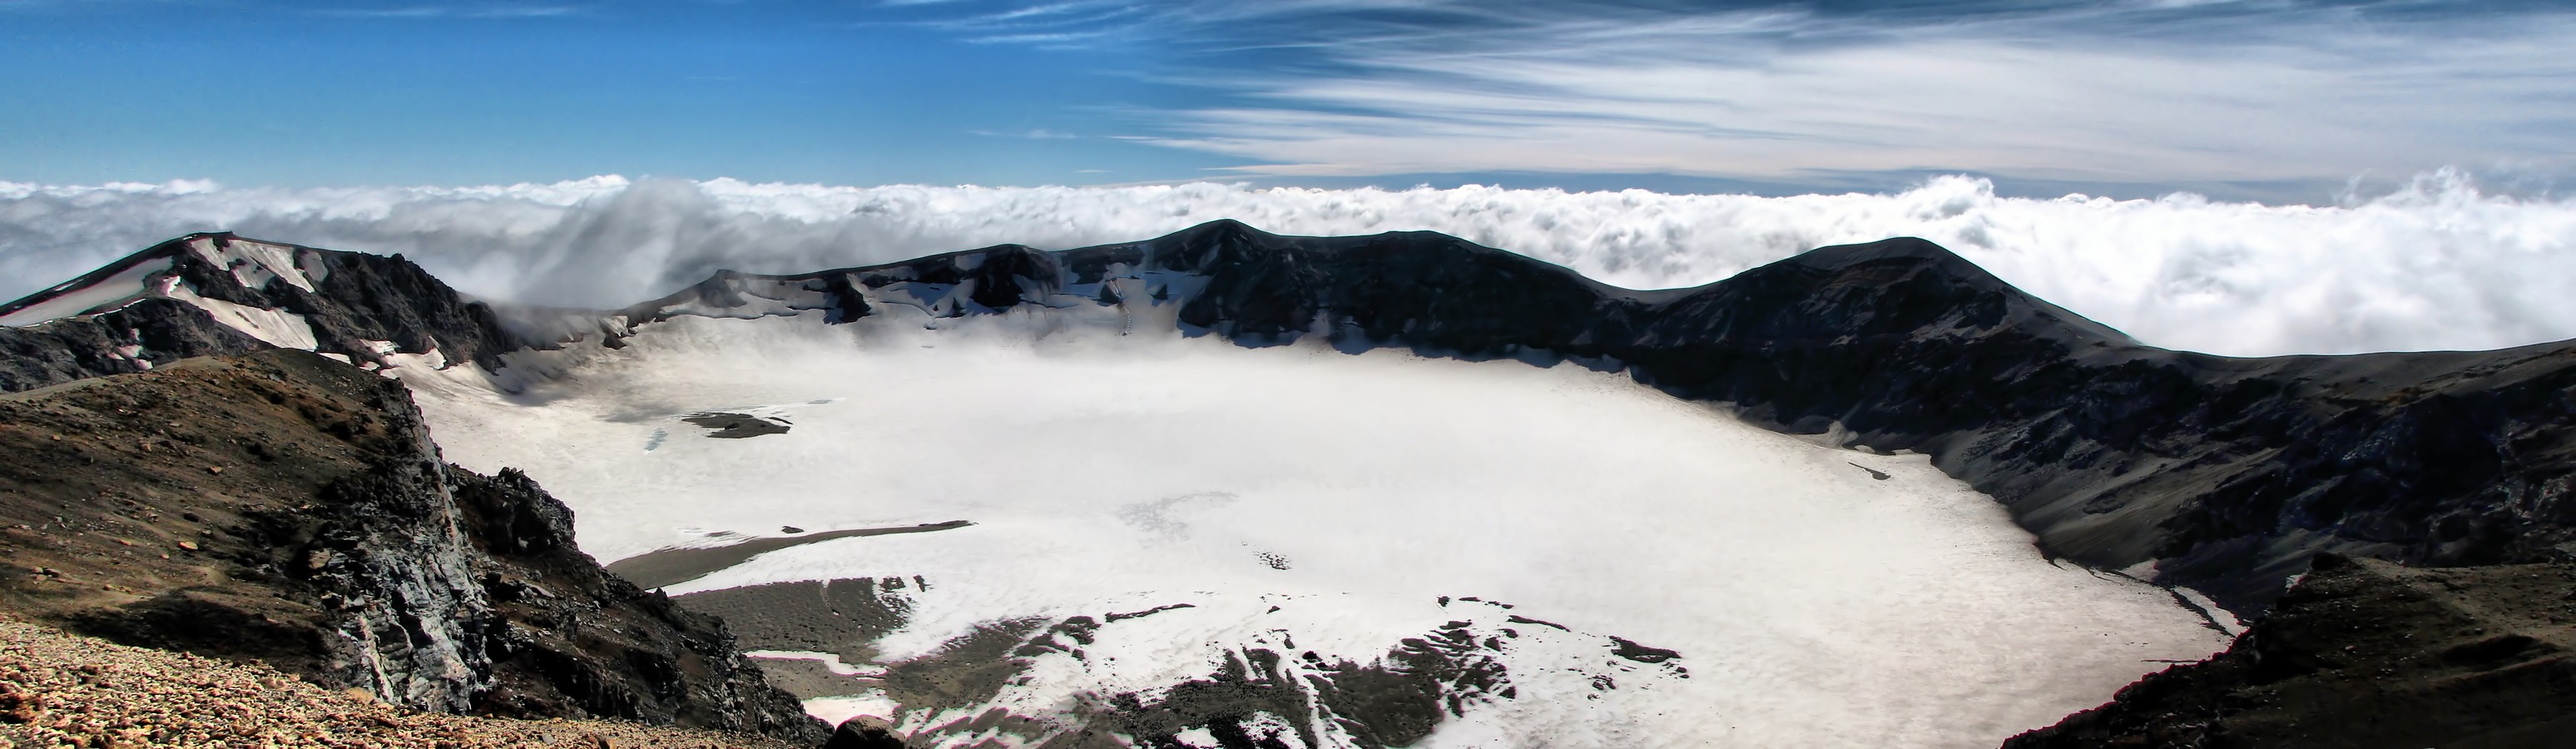 הר געש קפוא | נוף הר געש שלג הרים עננים צ'ילה טרק פויהוה פנורמה 